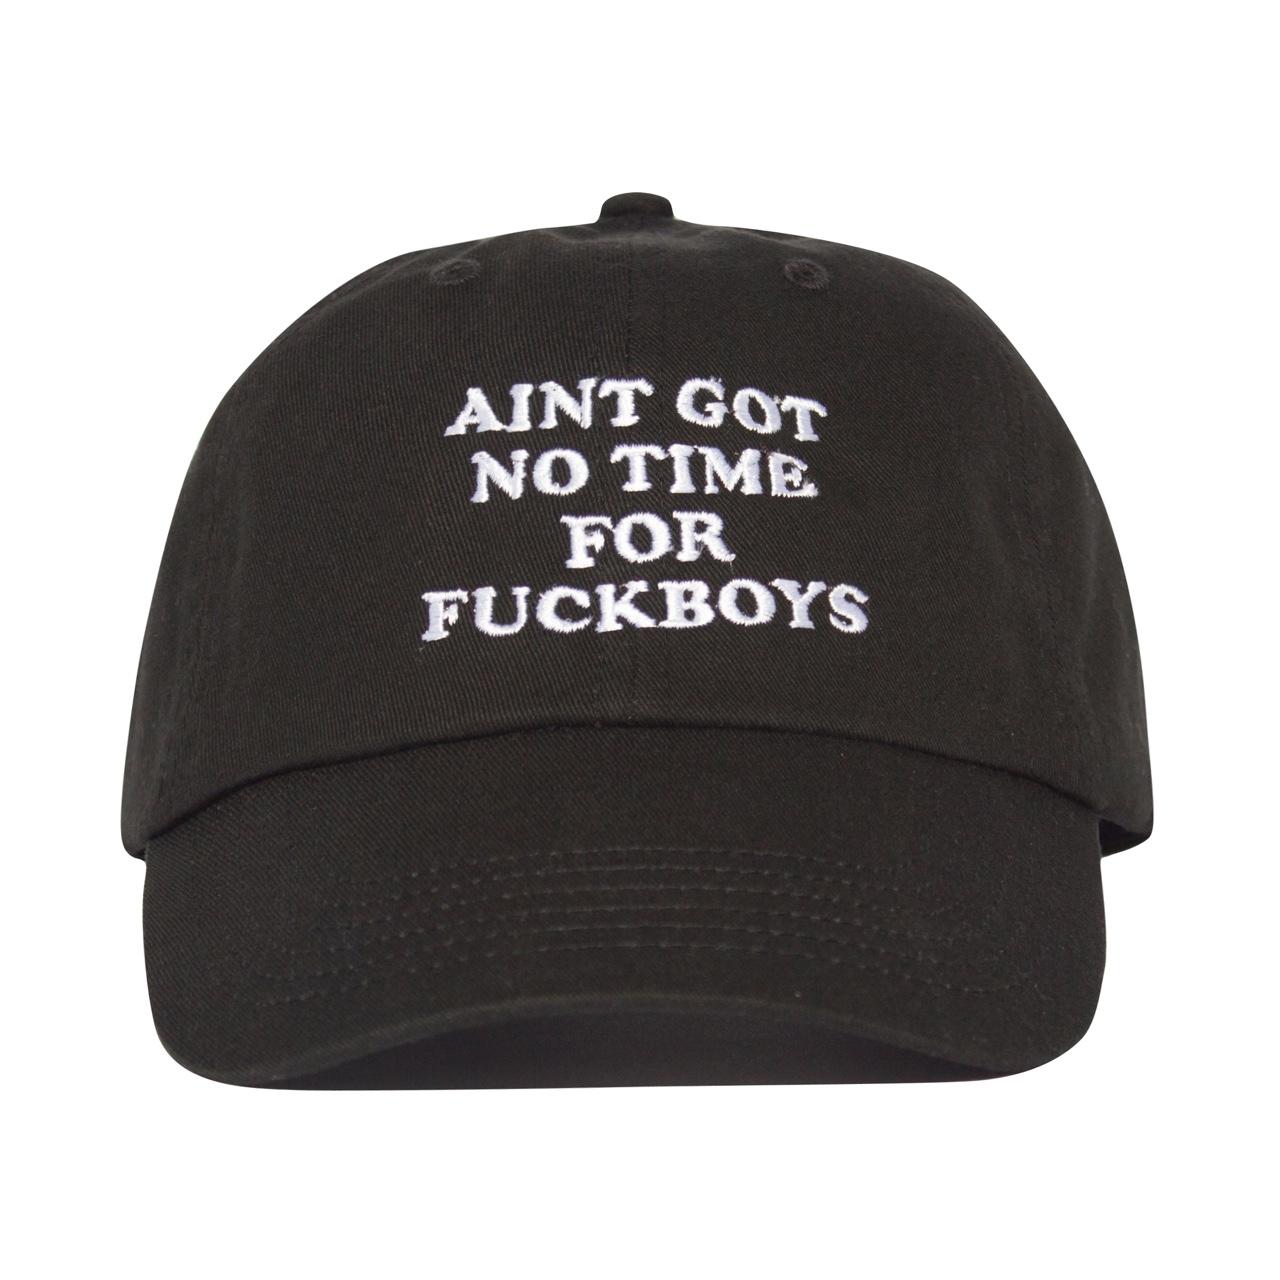 NO time For Fuckboys Hat - Black - Depop